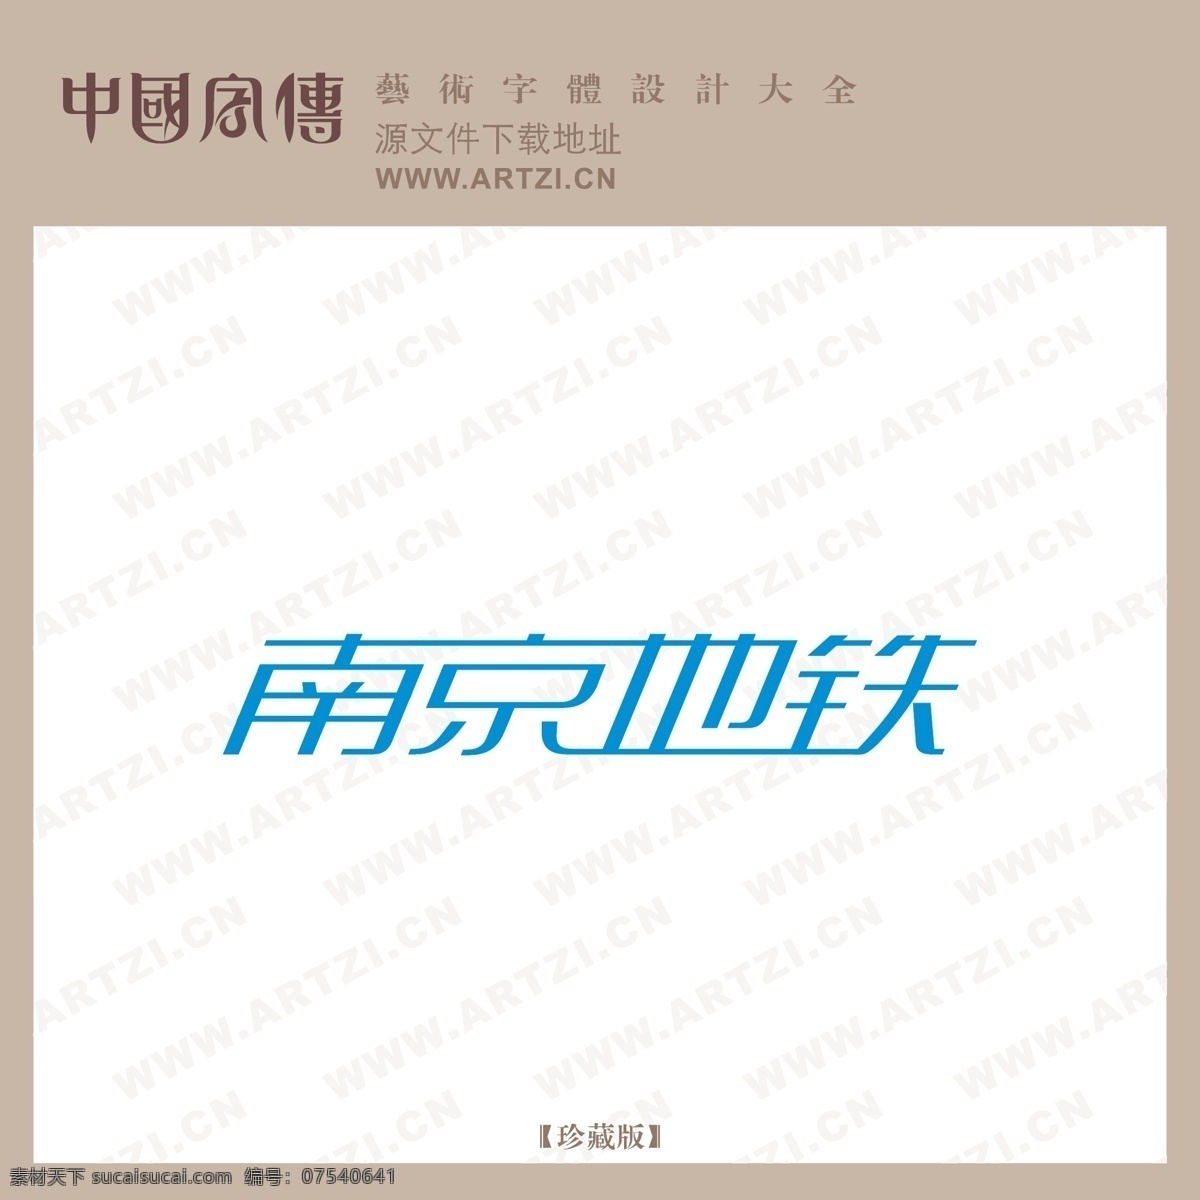 南京地铁 矢量下载 网页矢量 商业矢量 logo大全 白色